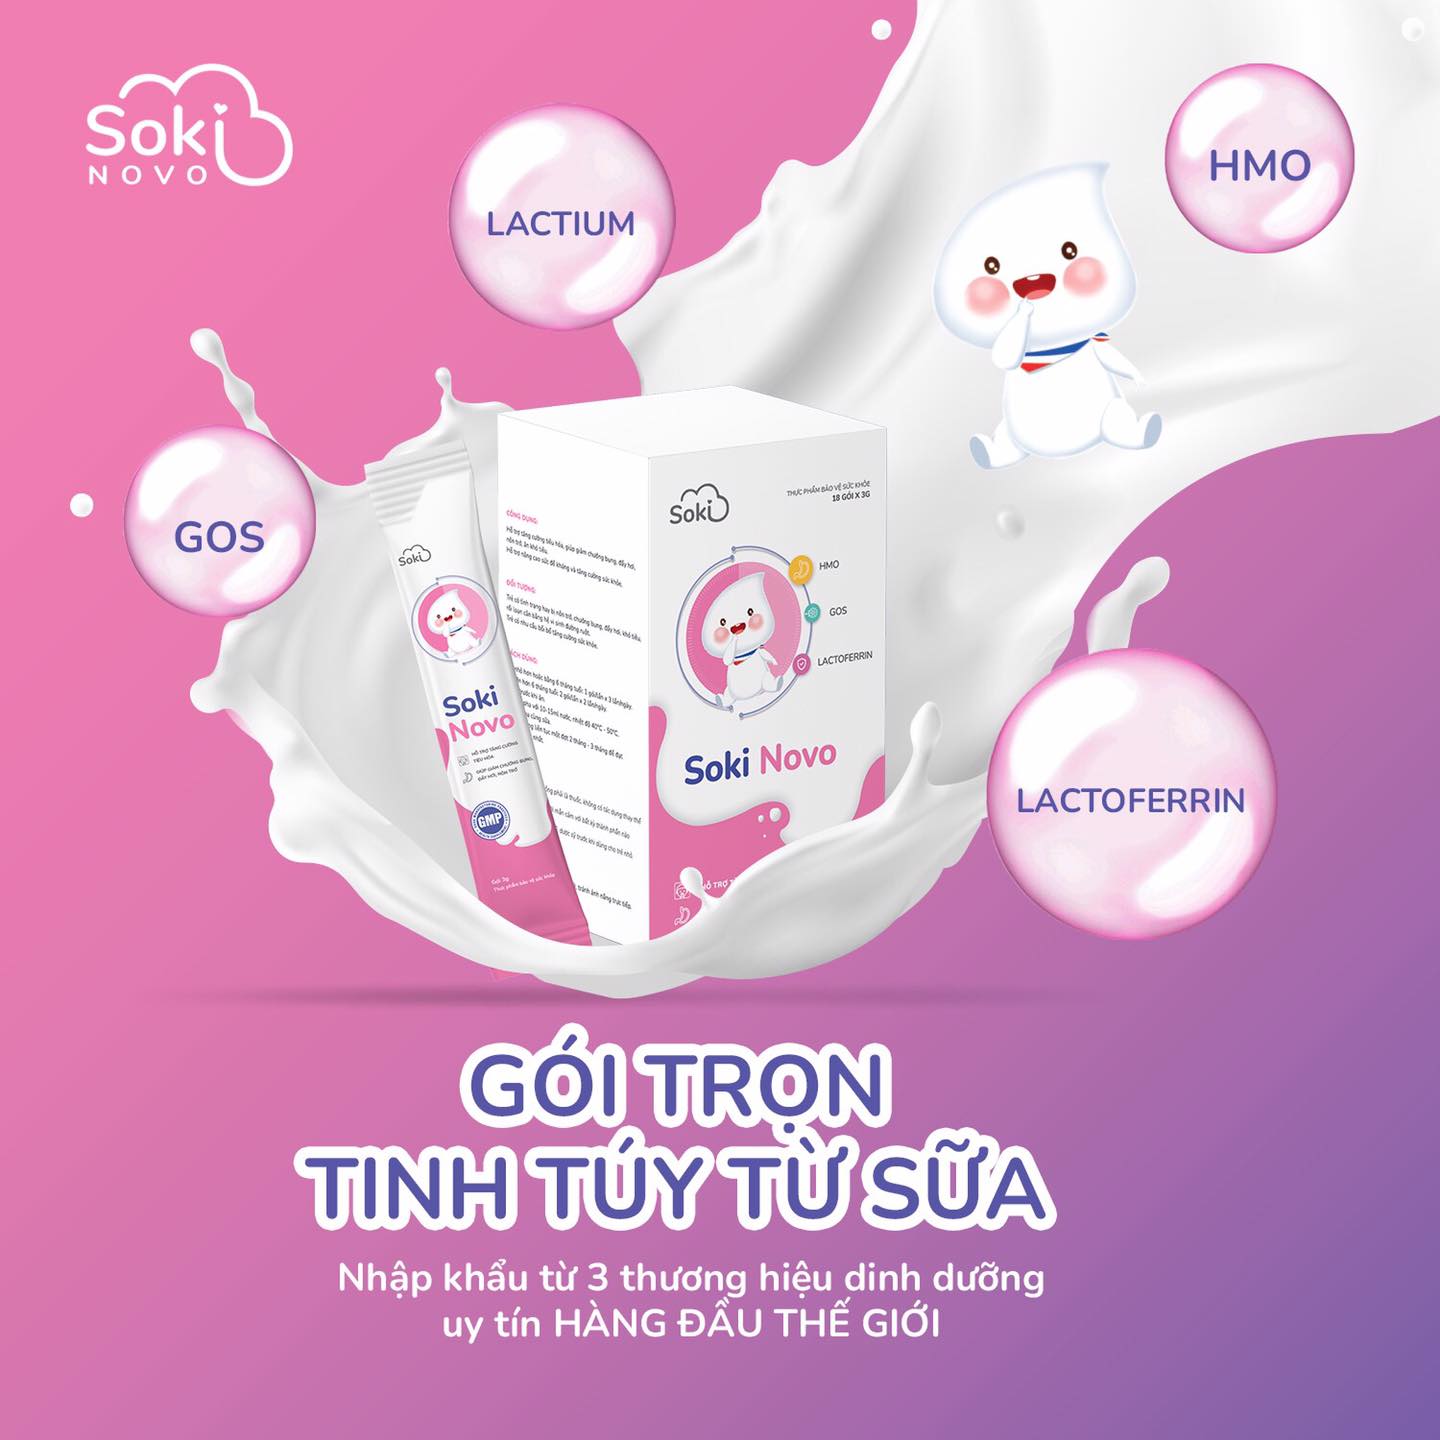 Soki Novo - Giải pháp nhanh chóng - an toàn - hiệu quả cho trẻ nôn trớ ọc sữa